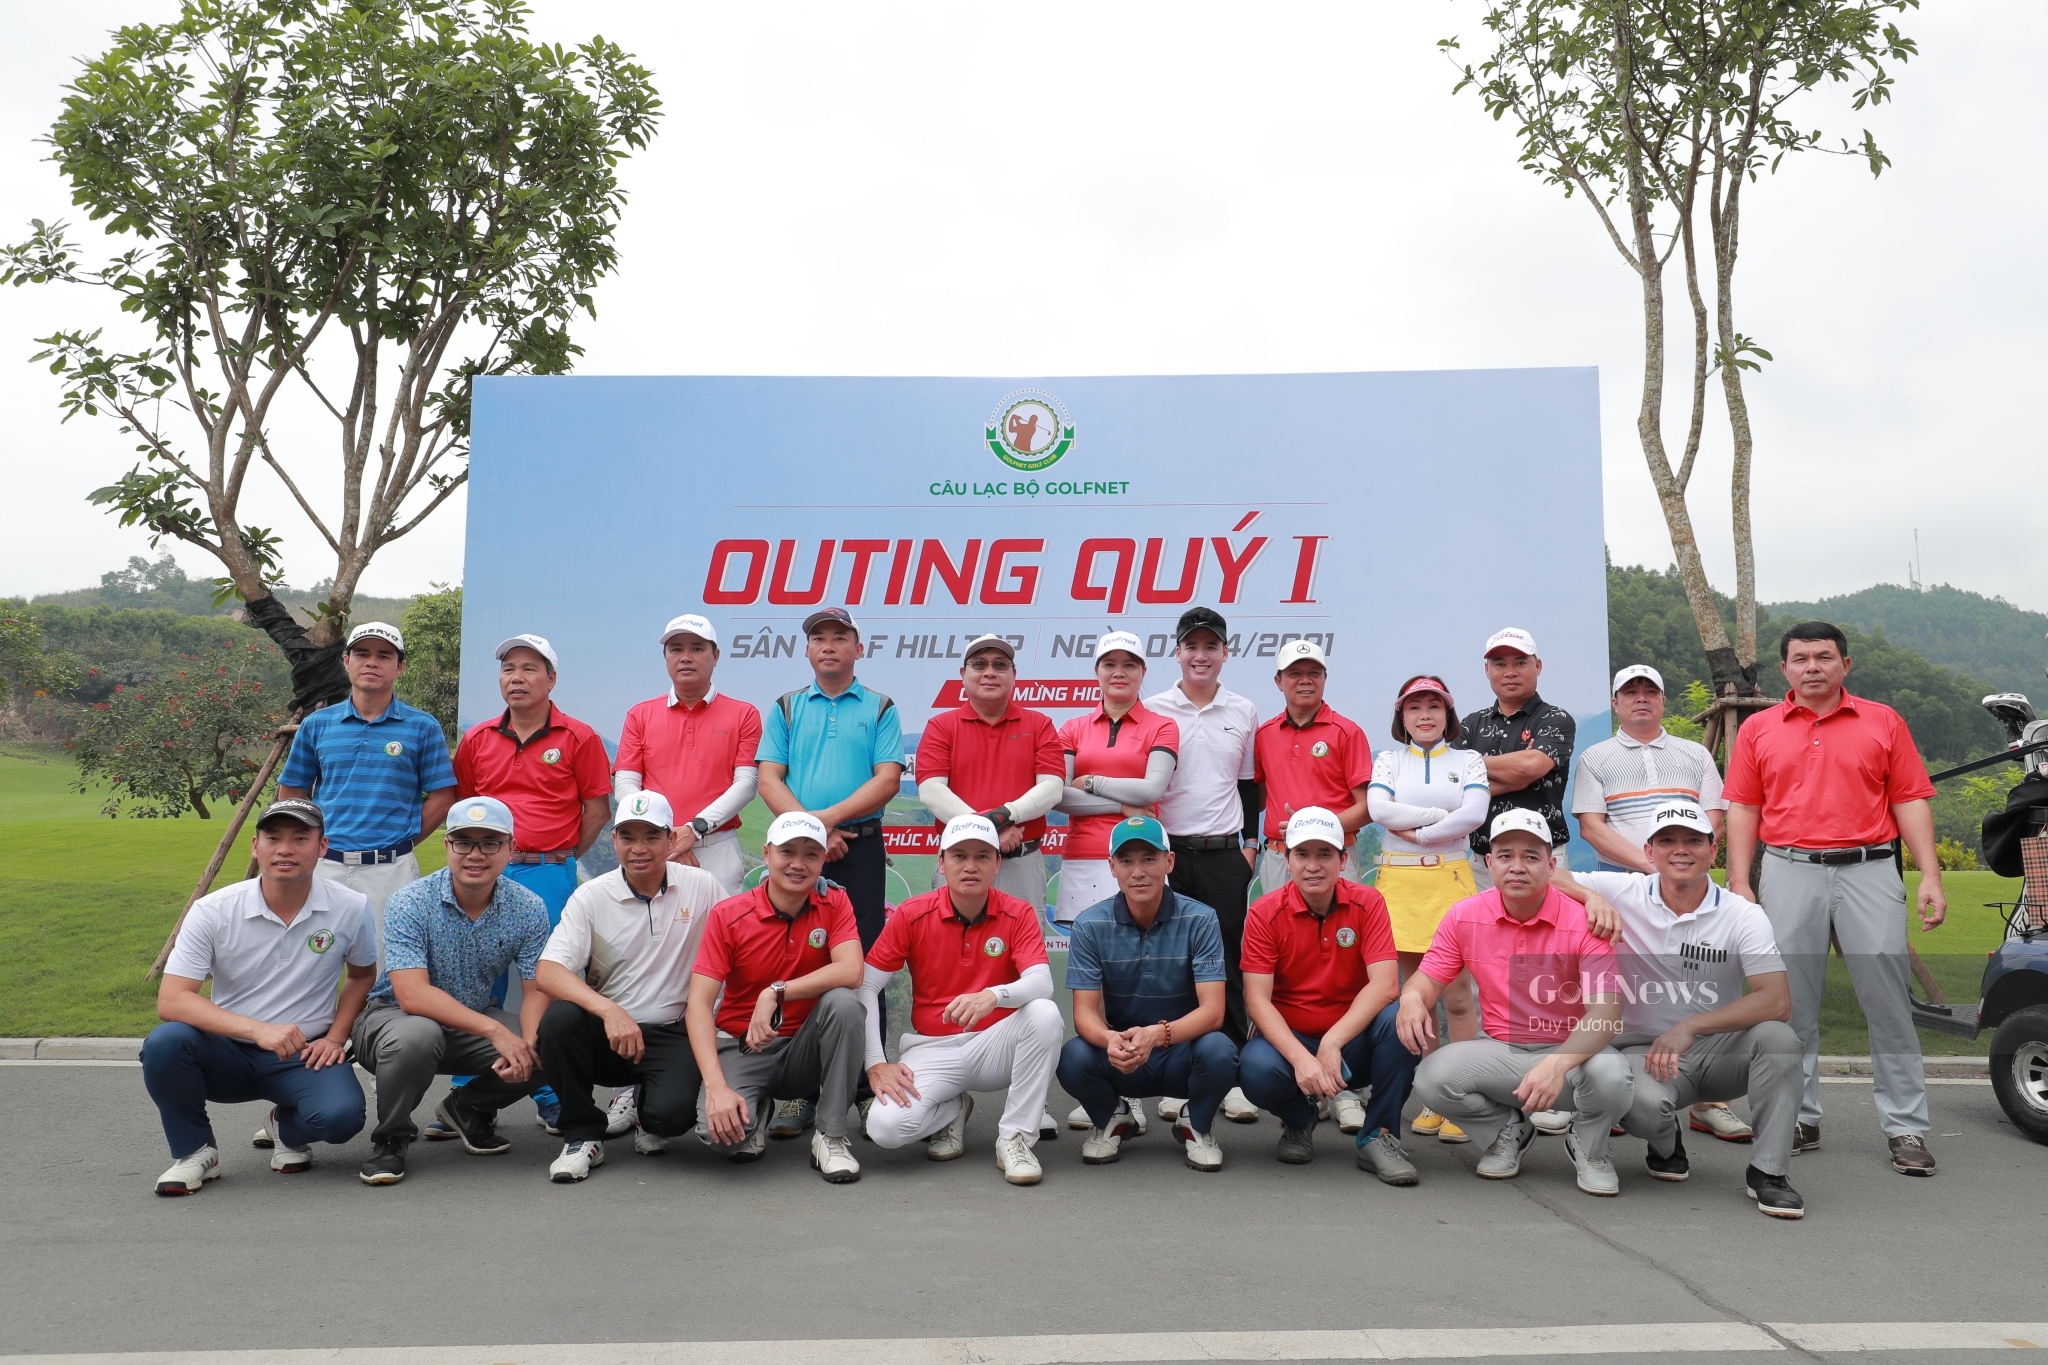 CLB GolfNet tổ chức giải đấu Outing Quý 1 gặp mặt đầu năm